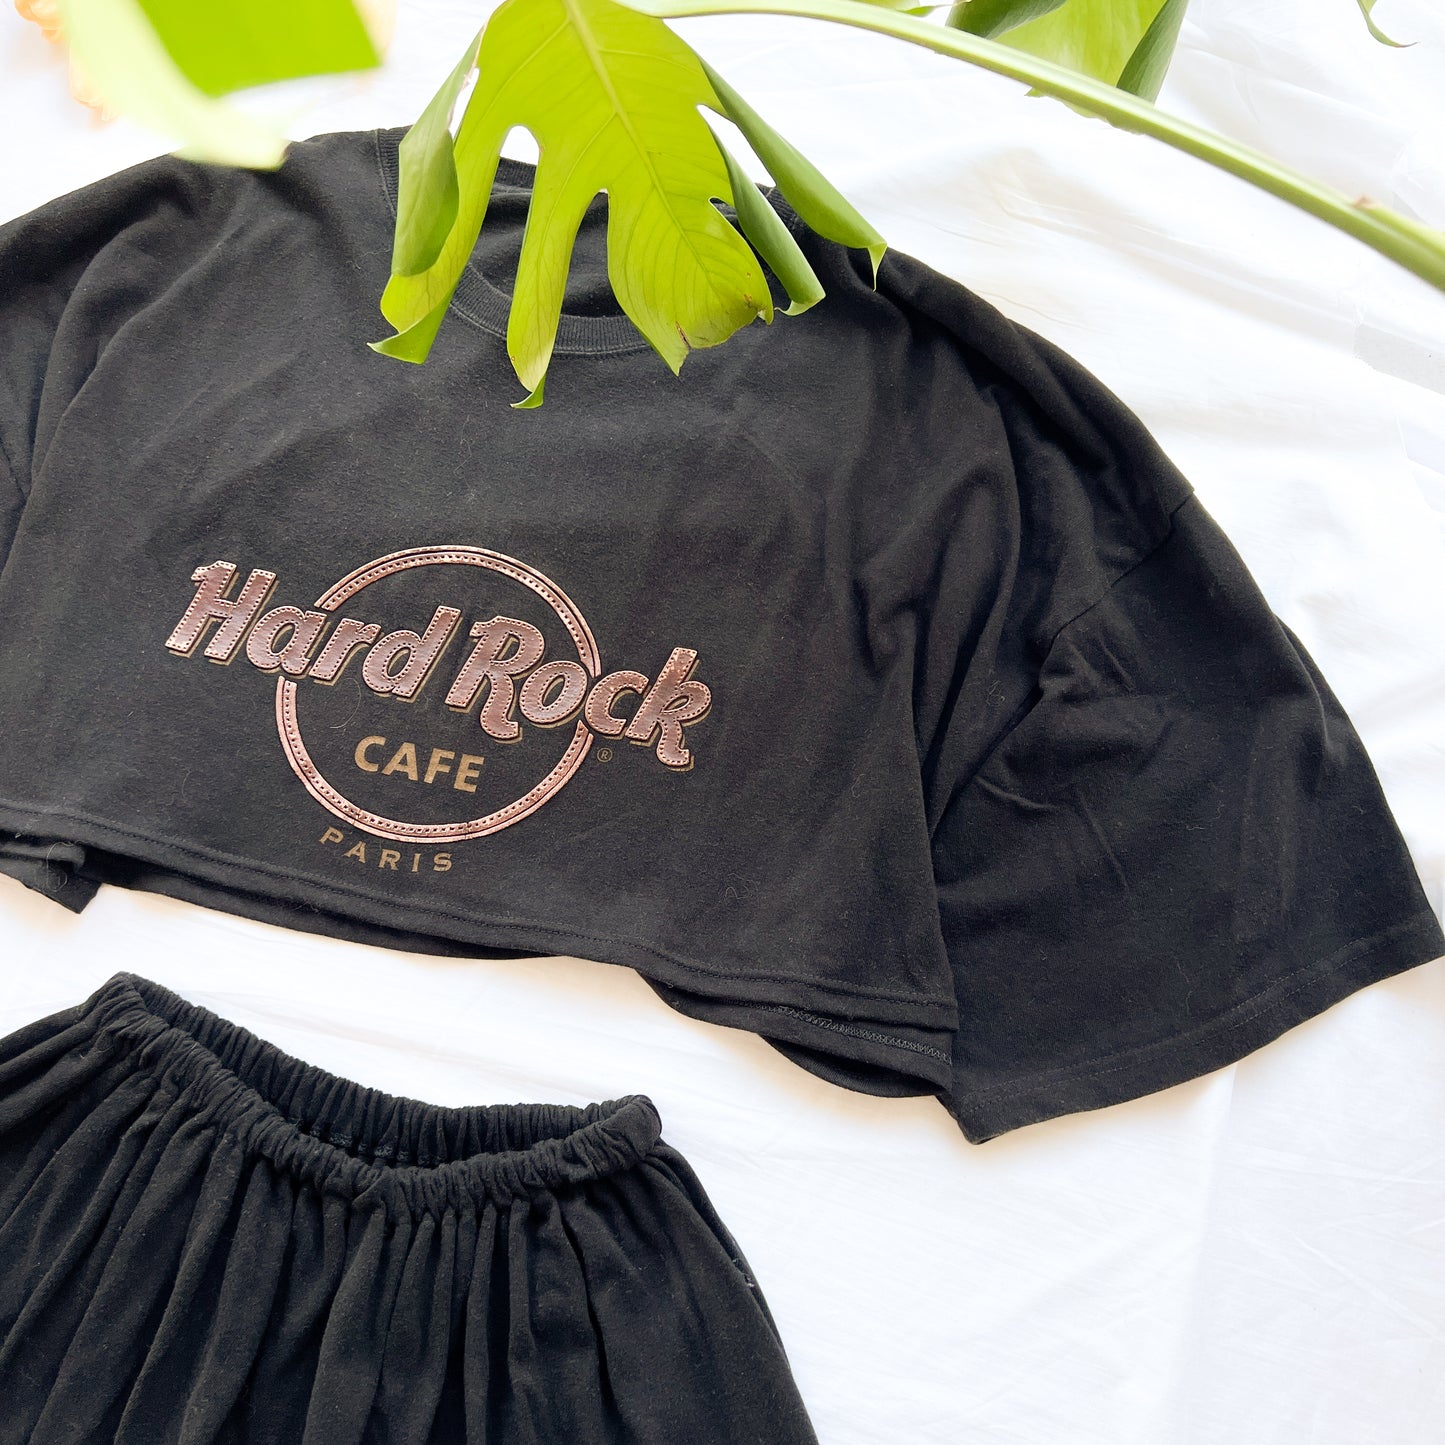 (XS) Hard Rock Café Paris reworked set vintage black